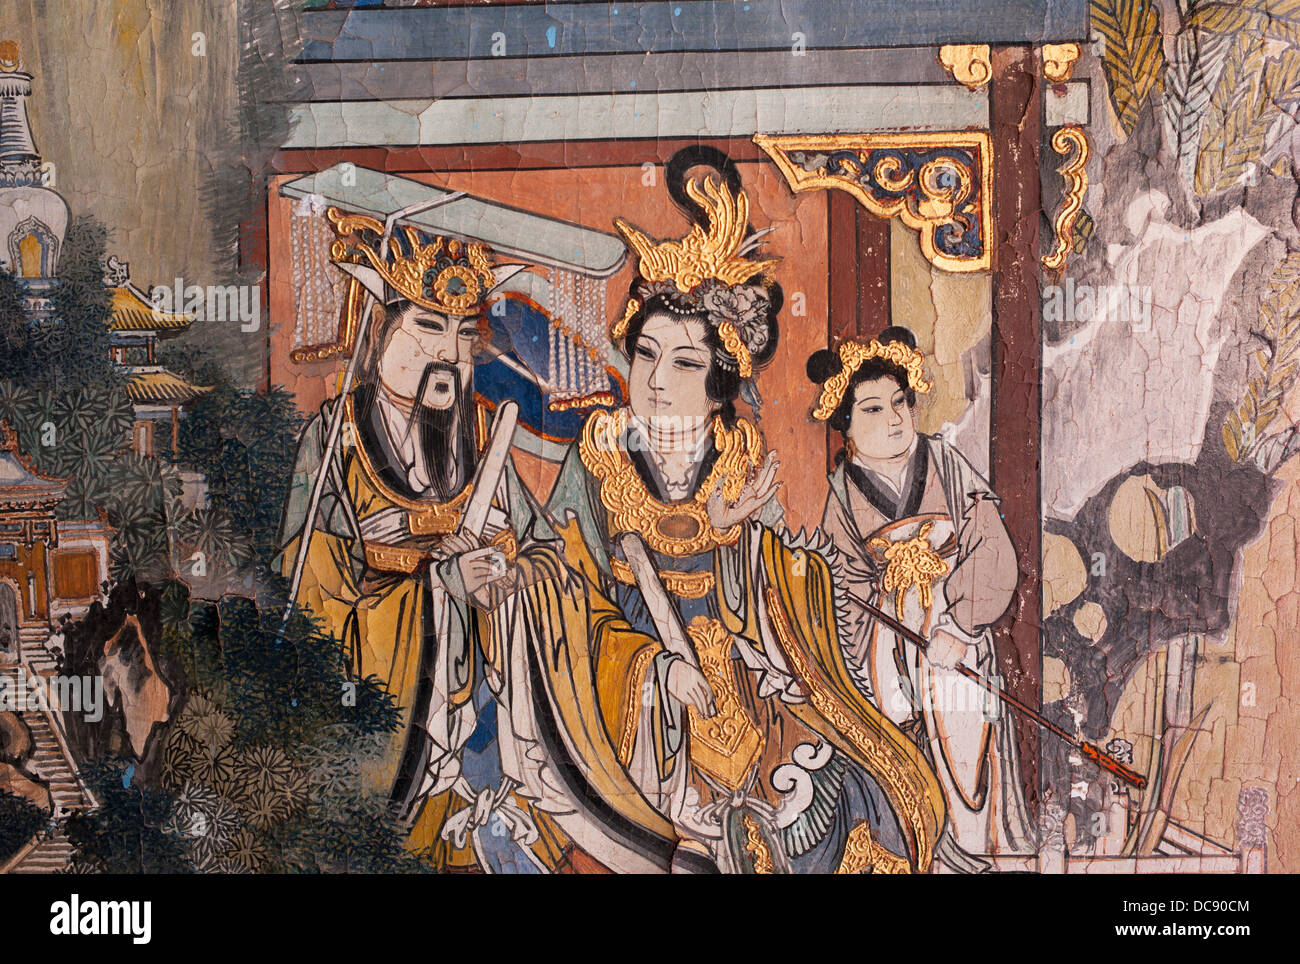 Mural de figuras chinas en una pared; China Foto de stock